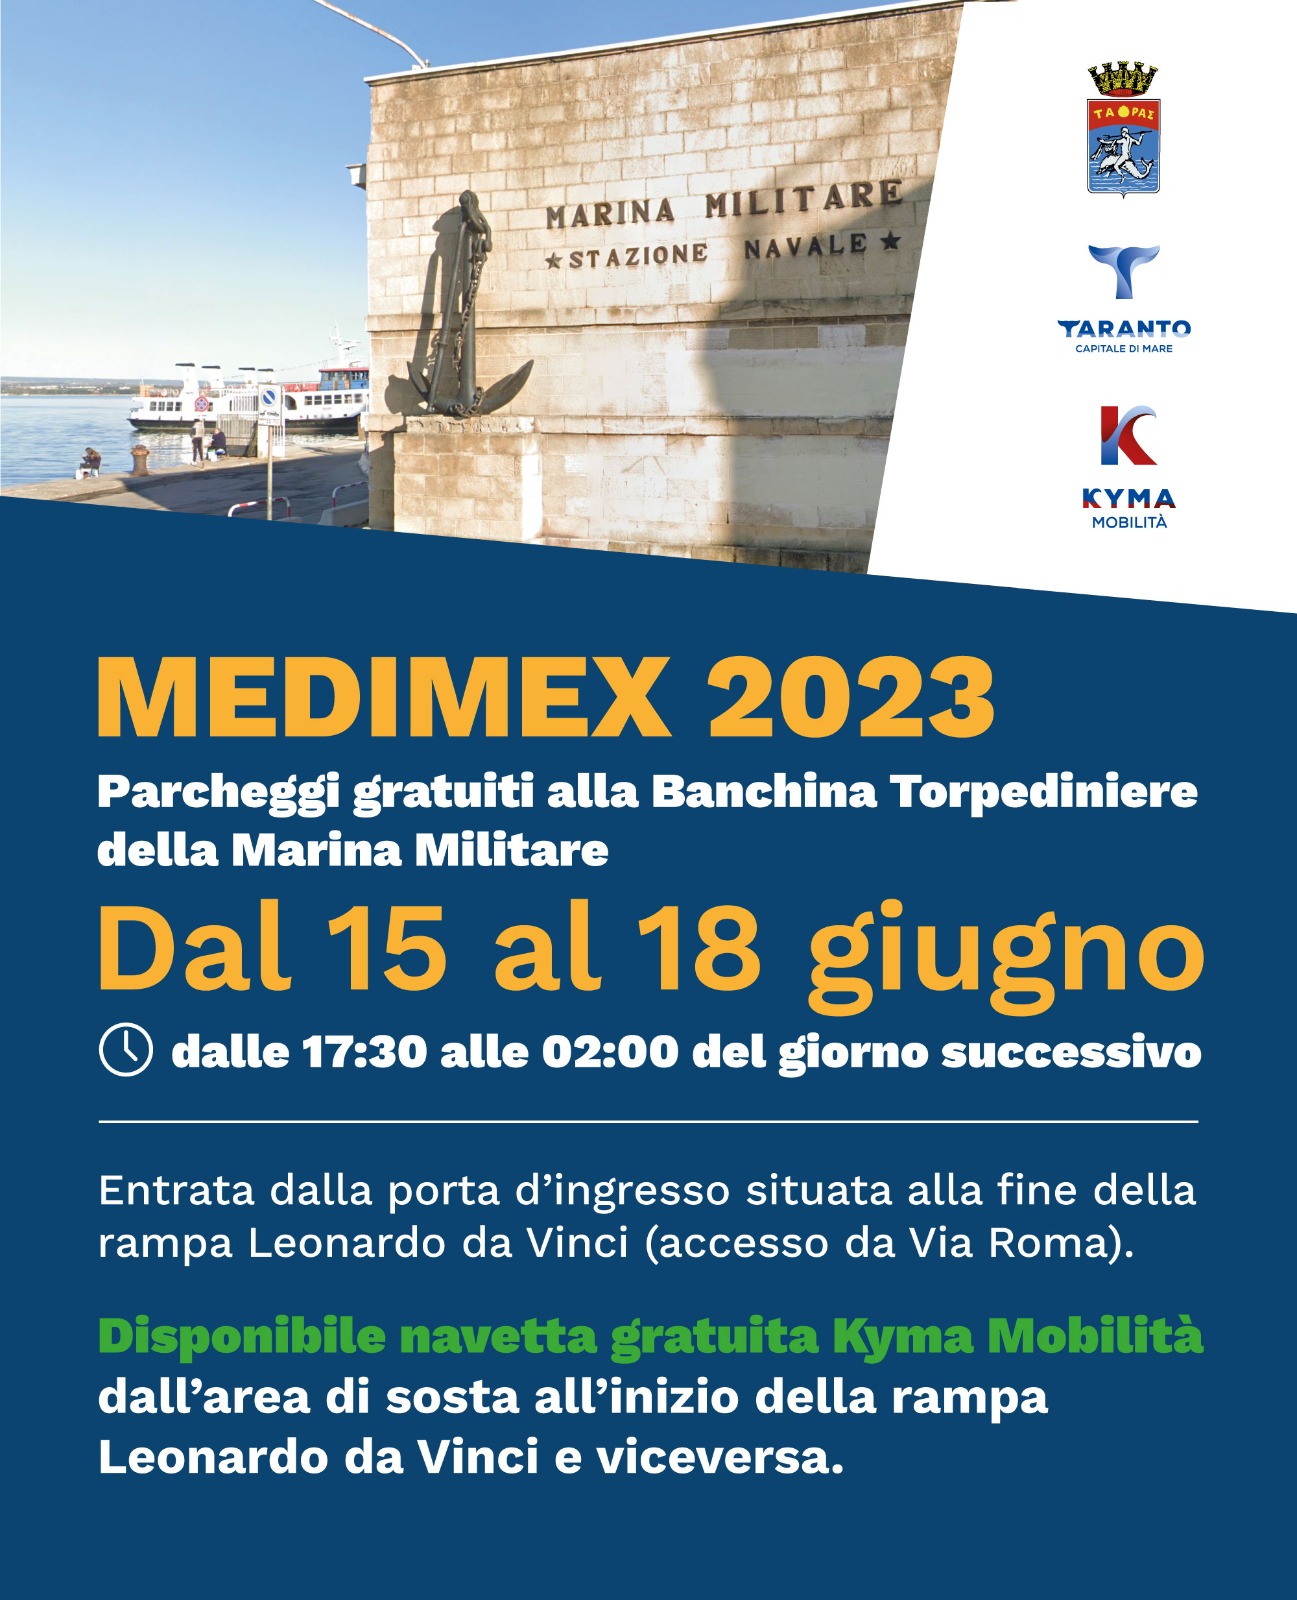 Medimex, parcheggio gratuito all’ex banchina torpediniere